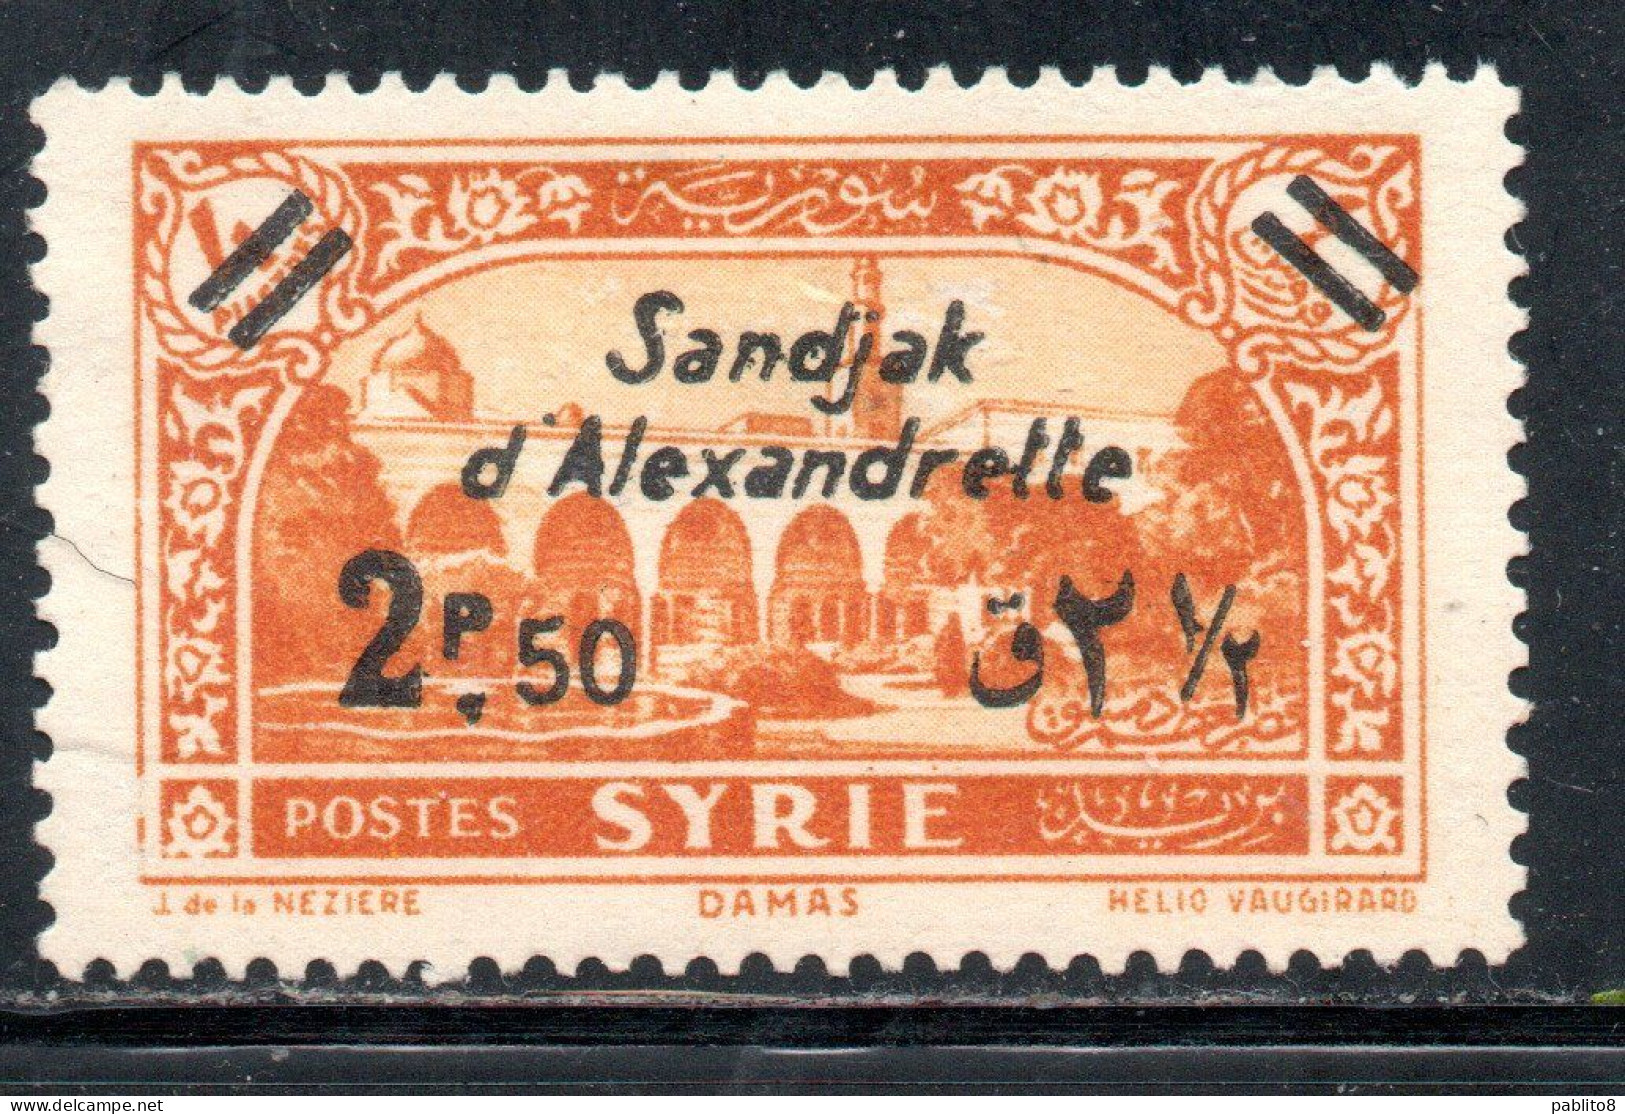 SANDJAK D'ALEXANDRETTE ALEXANDRETTA 1938 SURCHARGED 2.50p On 4p MNH - Nuevos